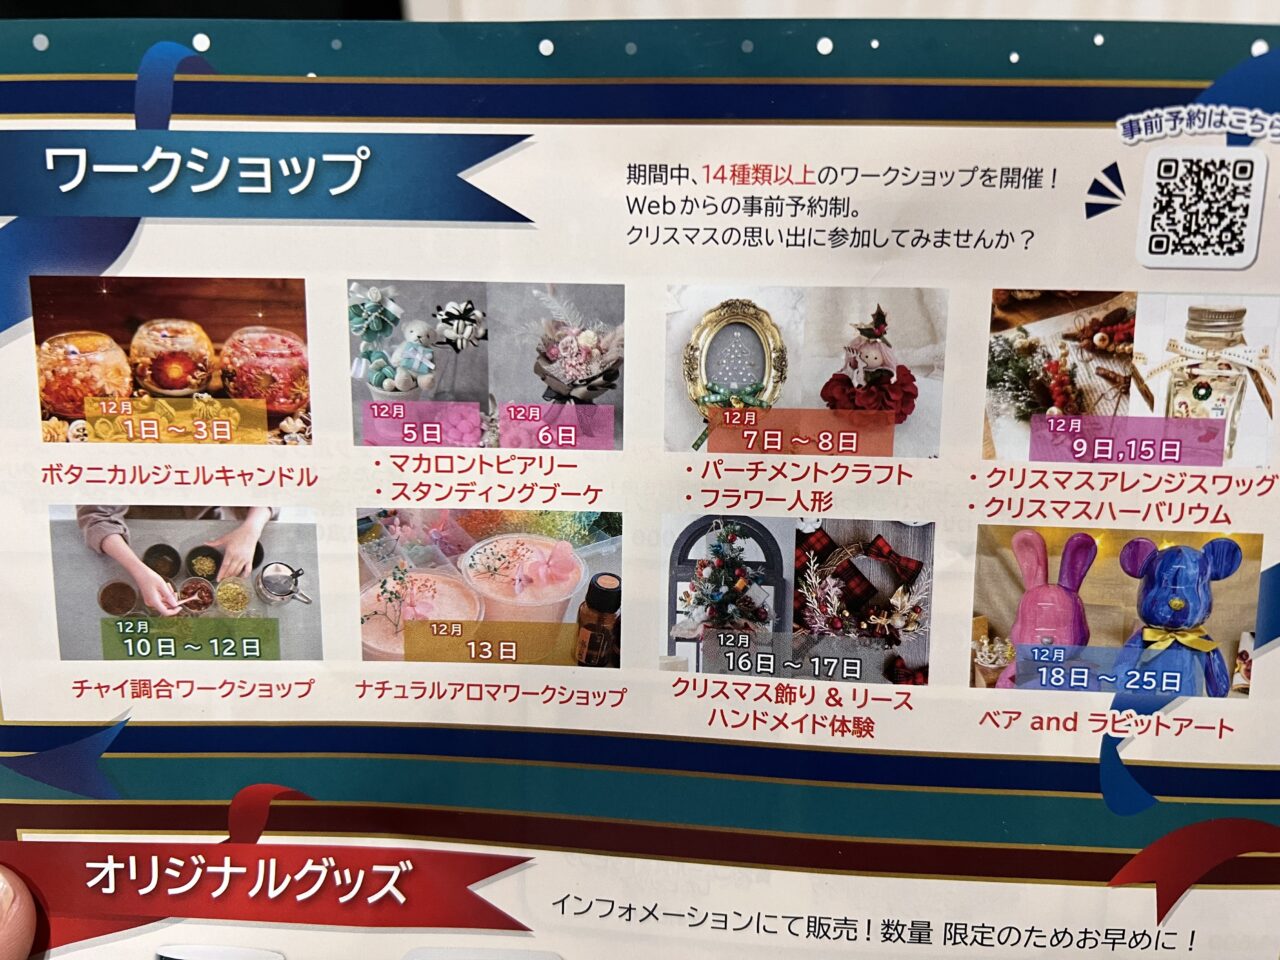 天王寺公園(てんしば)で開催されている「大阪クリスマスマーケット」のワークショップです。